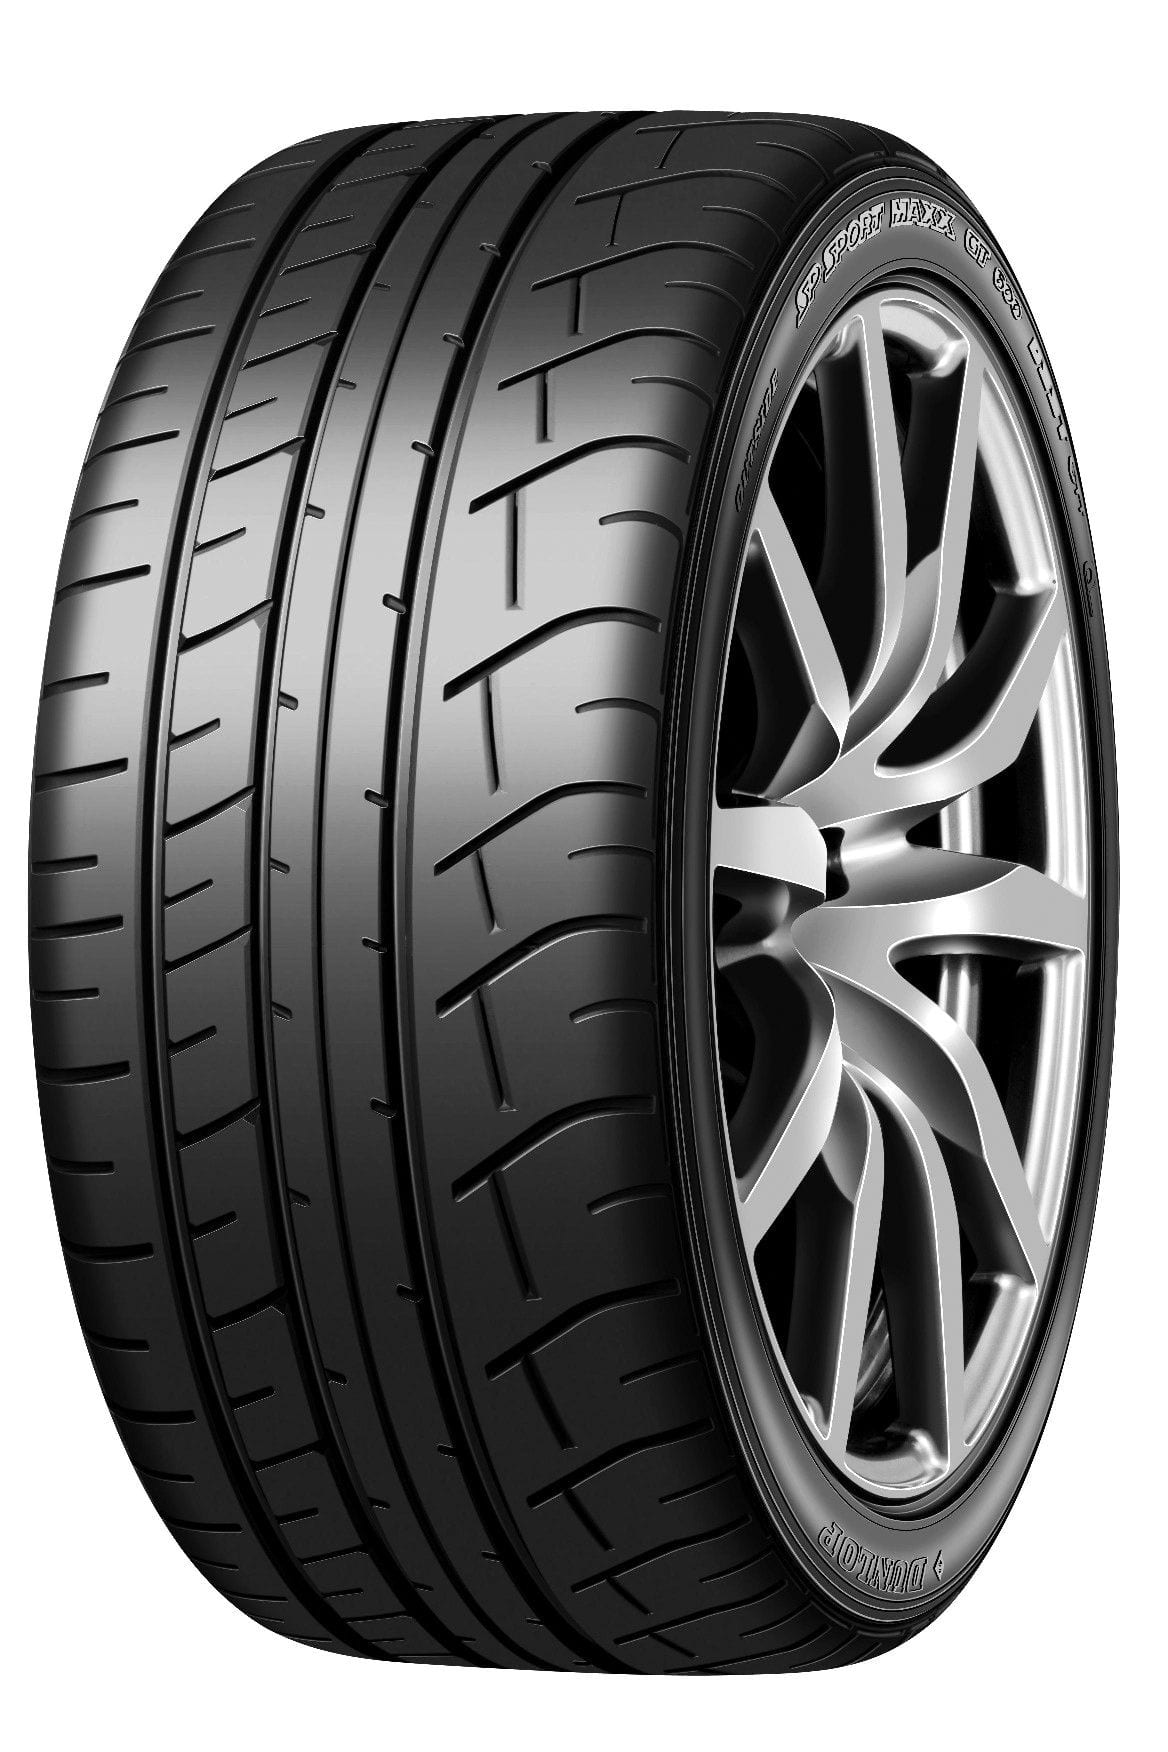 Dunlop SP Sport Maxx GT 600 DSST RFT Performance Tire For Passenger & CUV